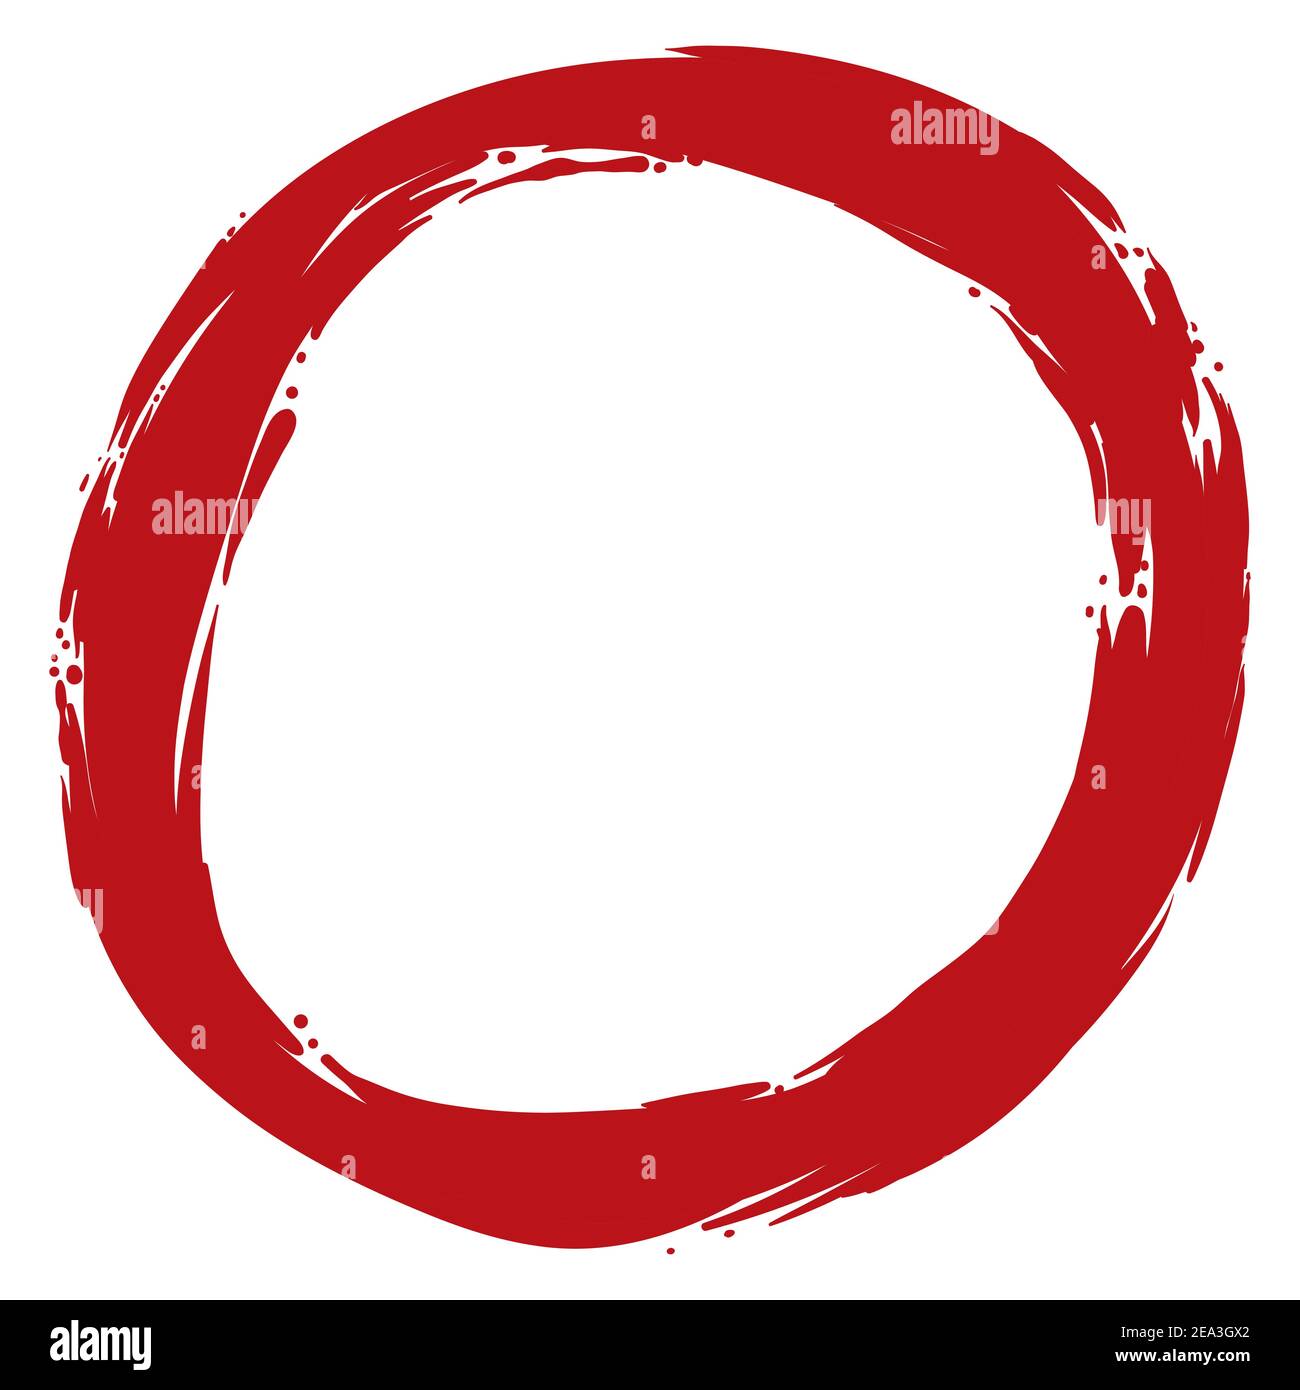 Kreis in Pinselstrich Stil mit roter Farbe, isoliert auf weißem Hintergrund. Stock Vektor